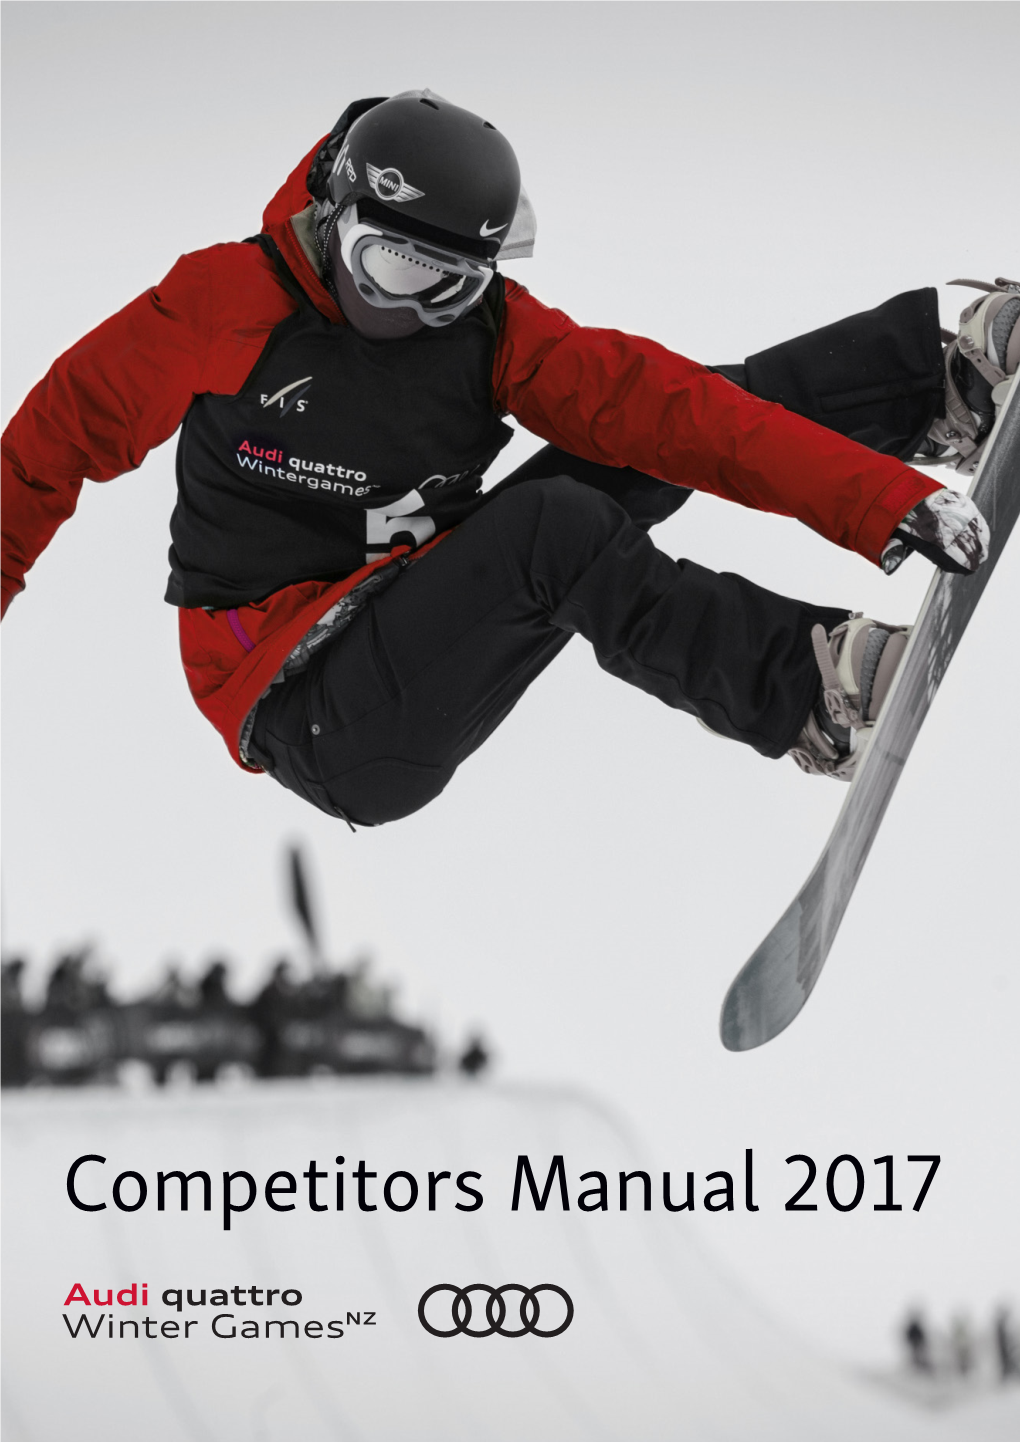 Competitors Manual 2017 Contents